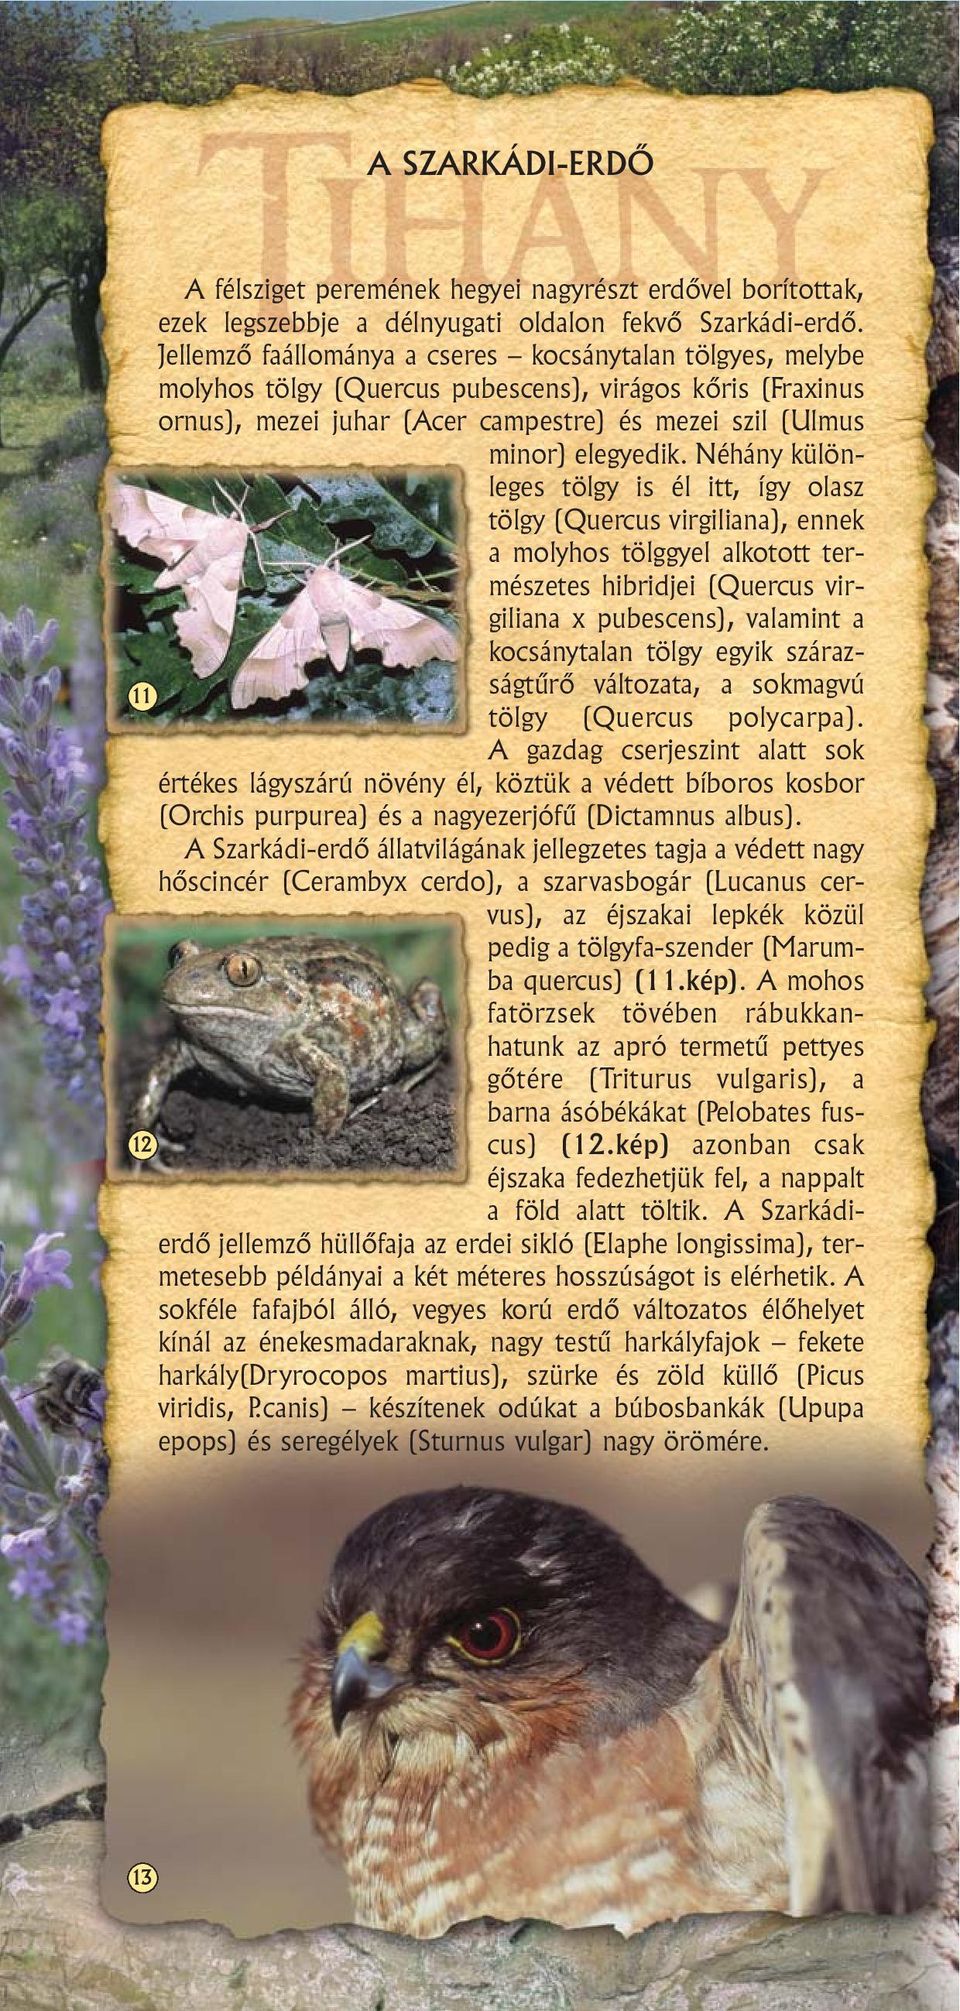 Néhány különleges tölgy is él itt, így olasz tölgy (Quercus virgiliana), ennek a molyhos tölggyel alkotott természetes hibridjei (Quercus virgiliana x pubescens), valamint a kocsánytalan tölgy egyik